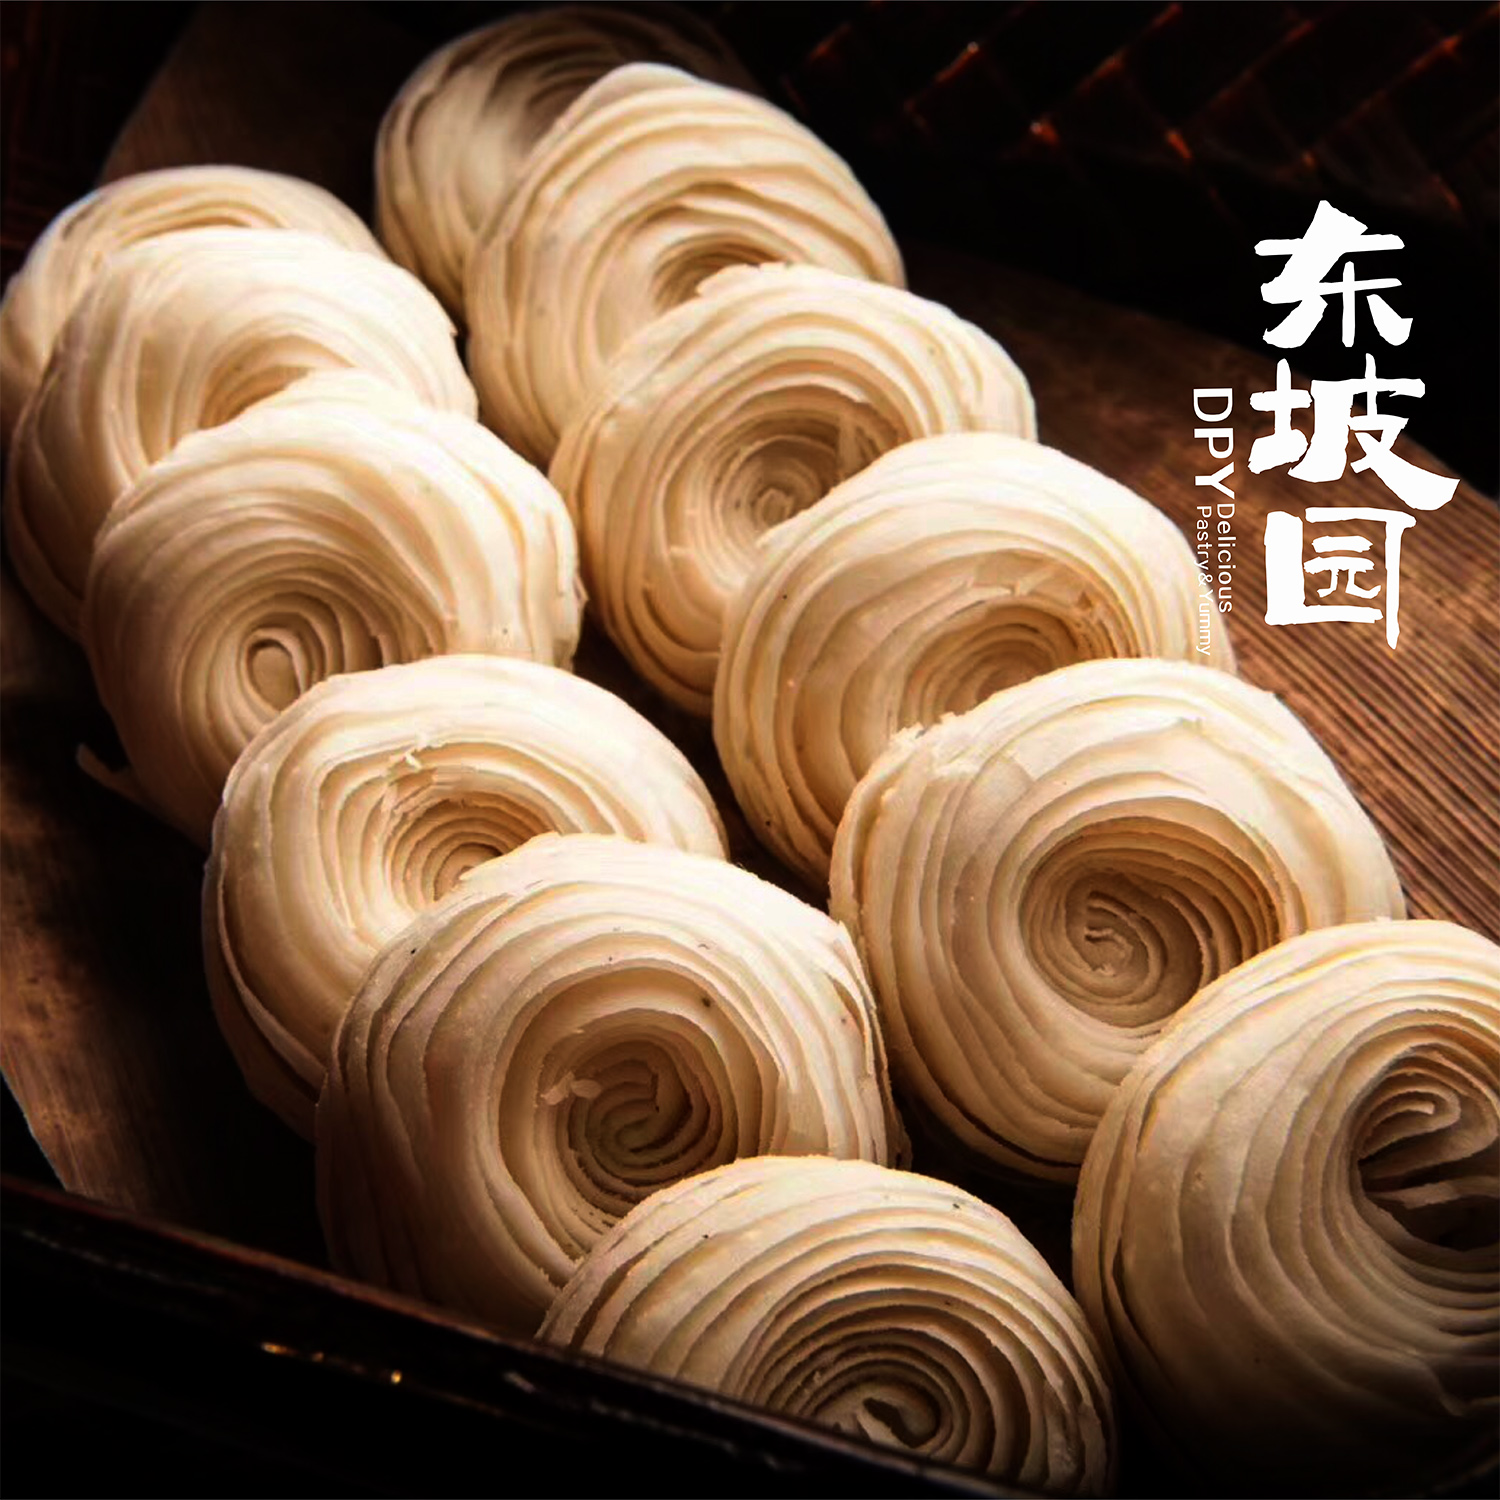 东坡园龙眼酥四川眉山特产传统手工糕点老式茶点休闲零食饼干面包